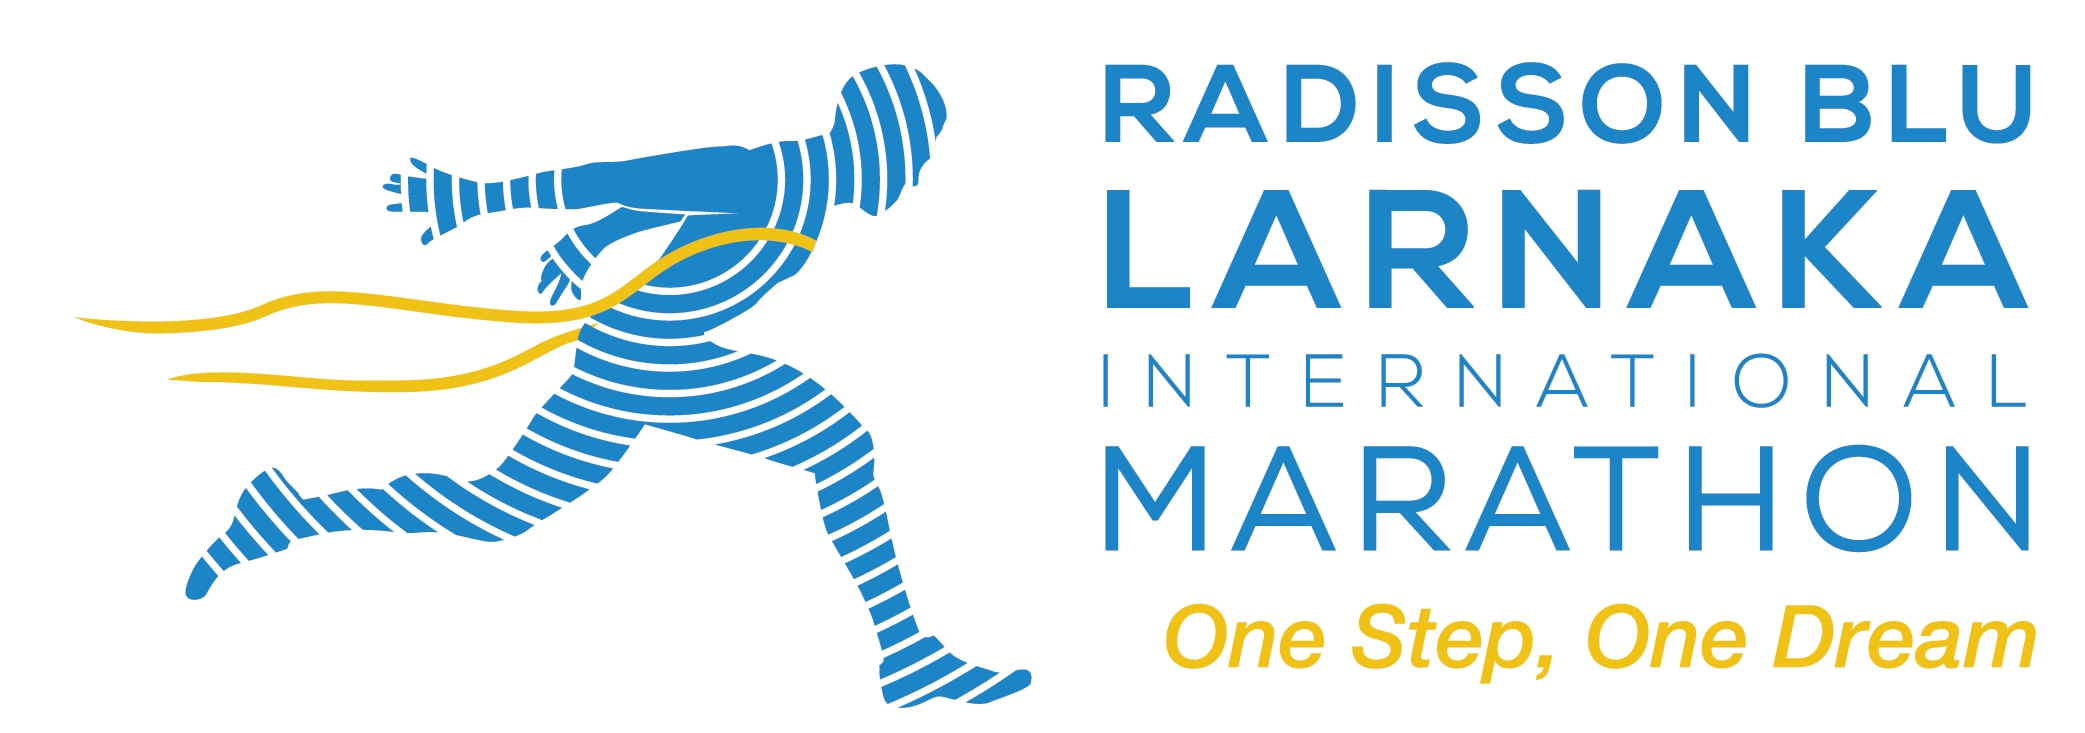 Όλα έτοιμα για την εκκίνηση του 2ου Radisson Blu Διεθνούς Μαραθωνίου Λάρνακας!